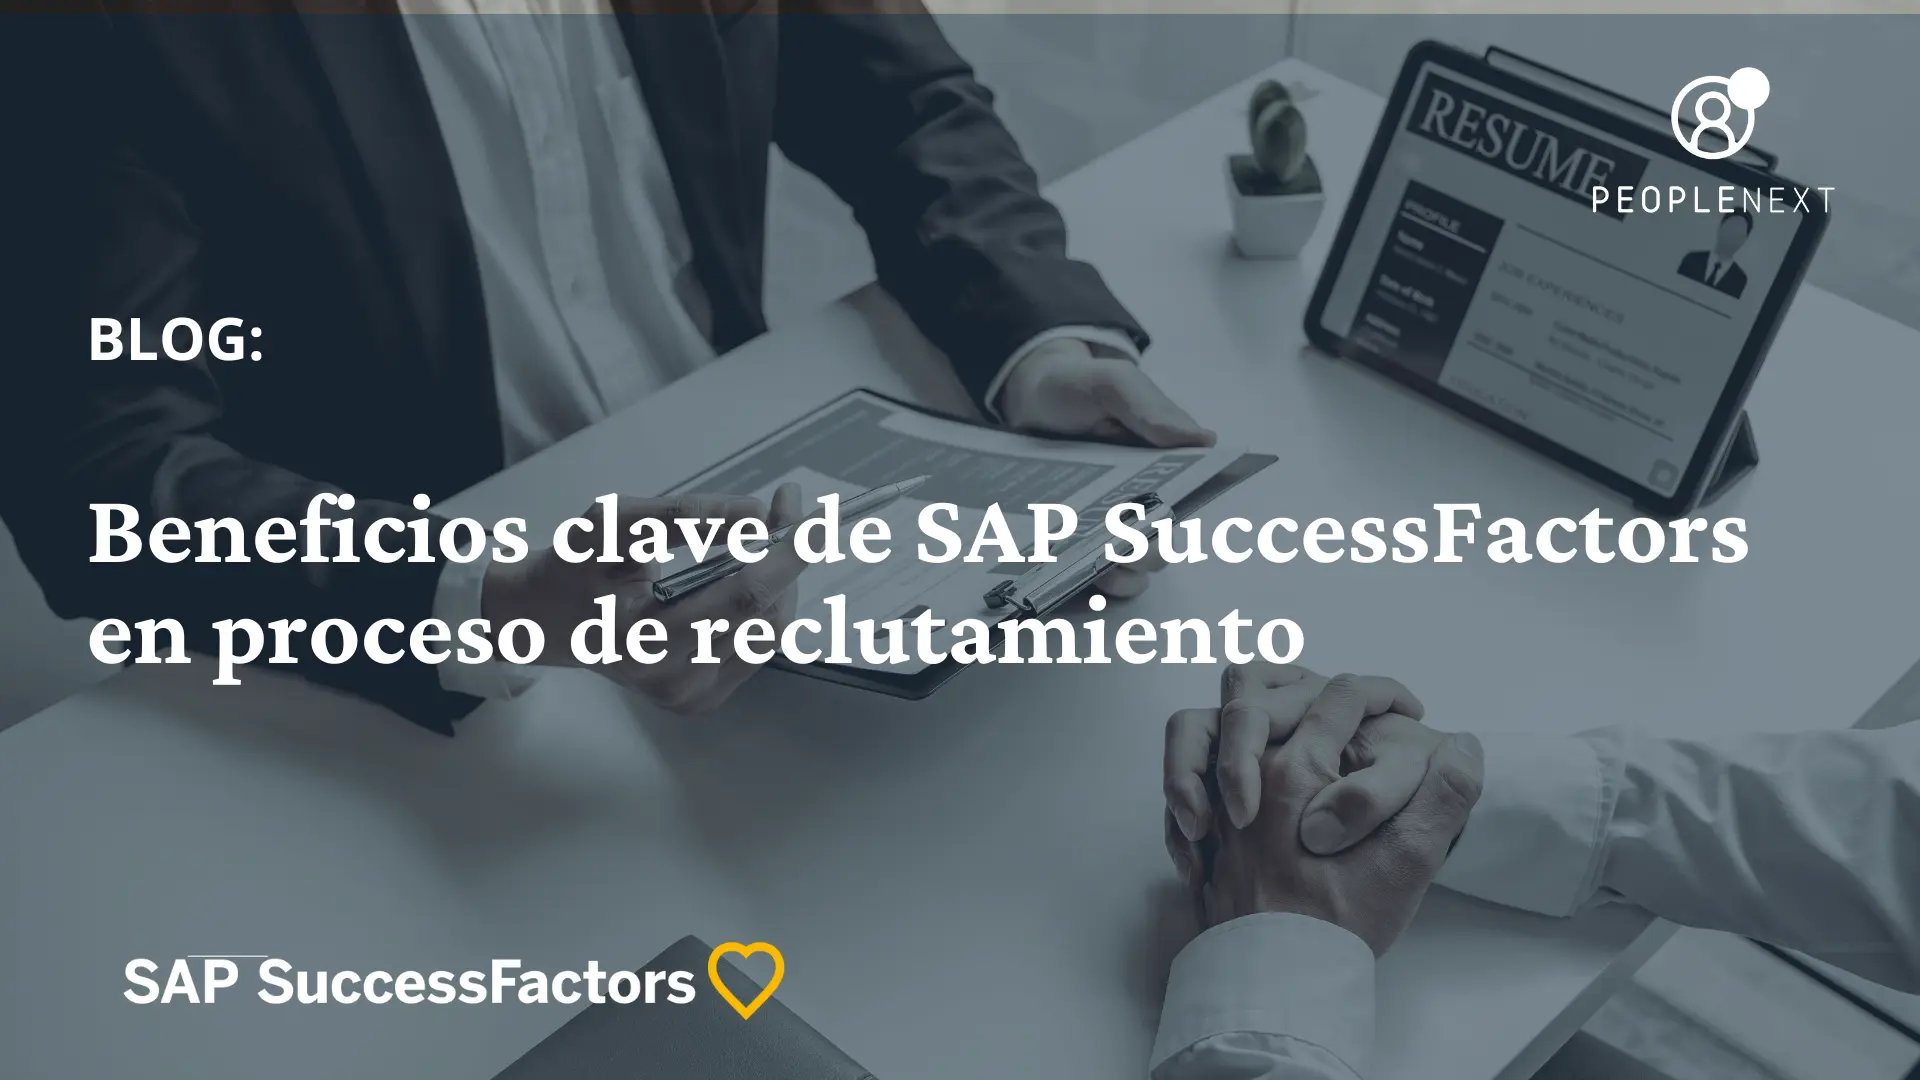 Beneficios clave de SAP SuccessFactors en proceso de reclutamiento